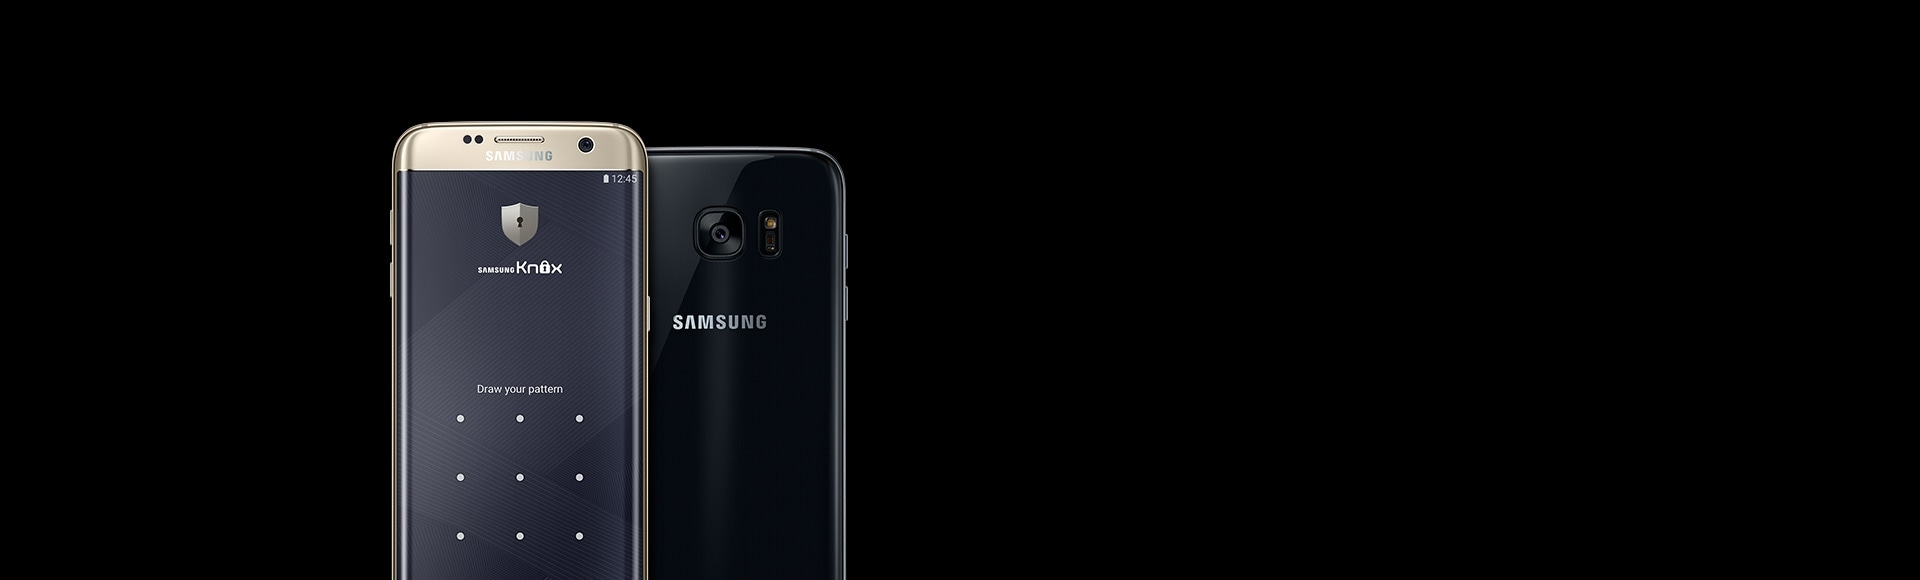 صفحه Samsung Knox روی یک Galaxy S7 edge که رو به جلو قرار گرفته، و دیگری که به پشت قرار گرفته است.